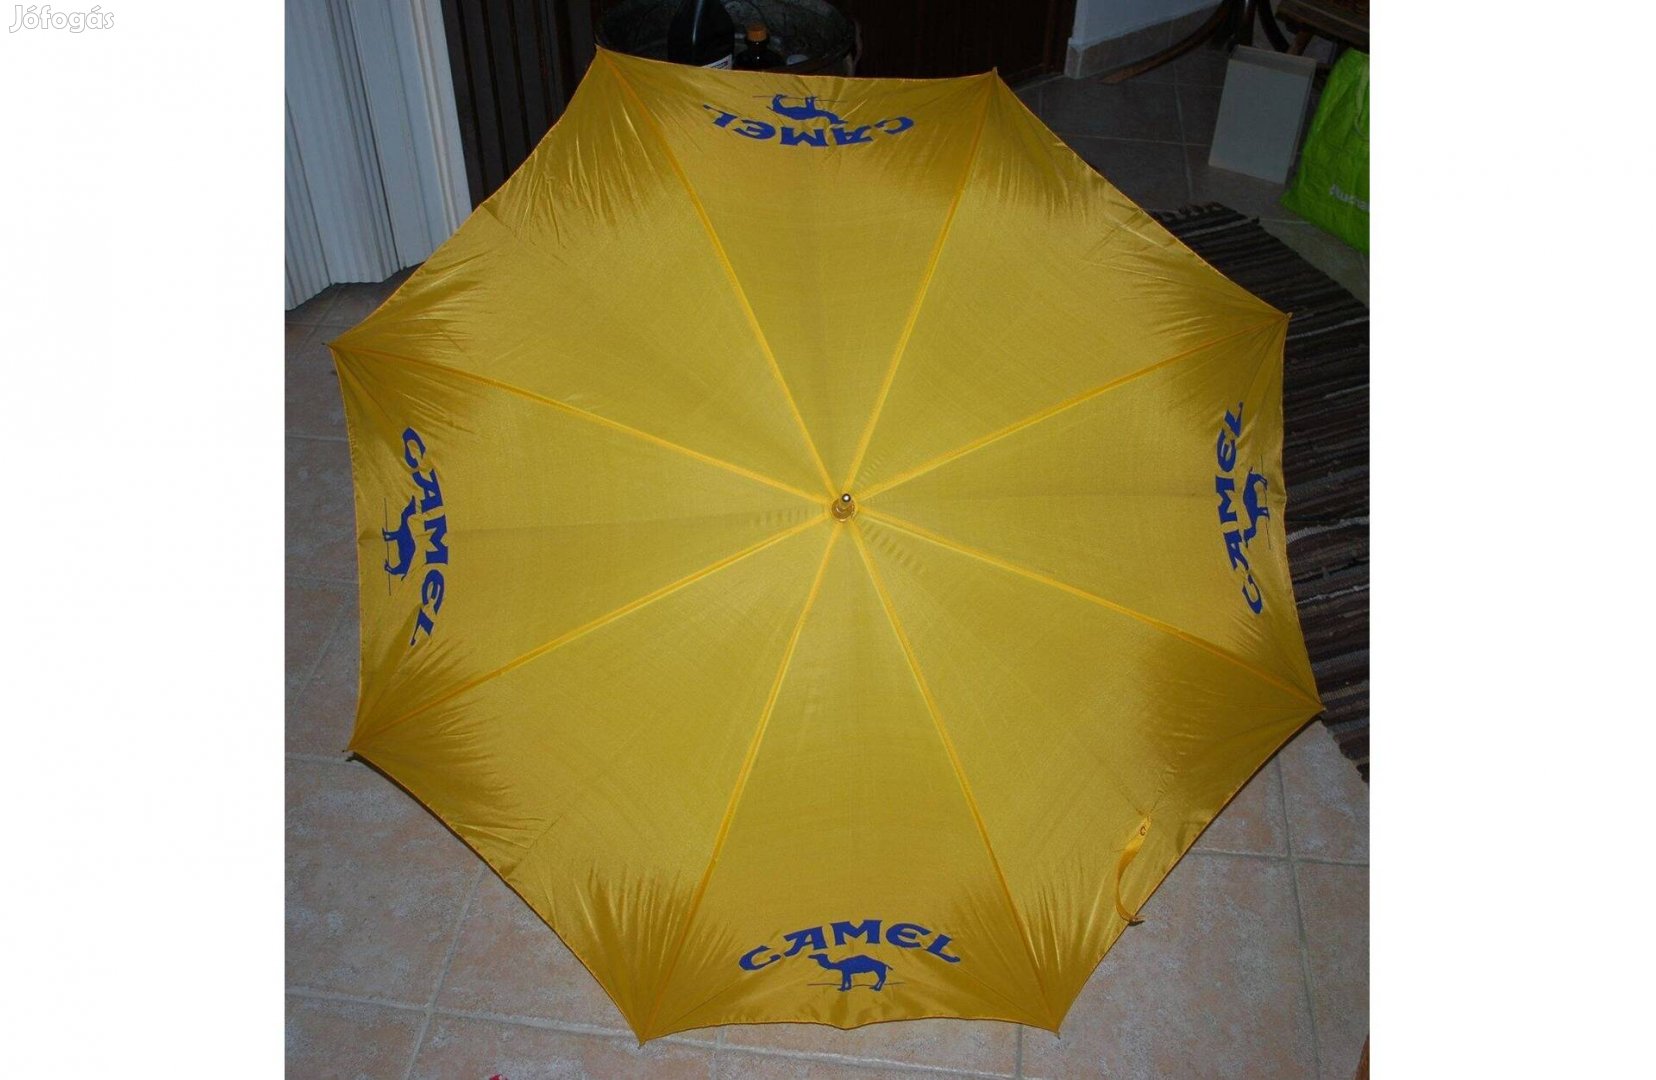 CAMEL - F1 szponzori esernyő ('90-es évek eleje)